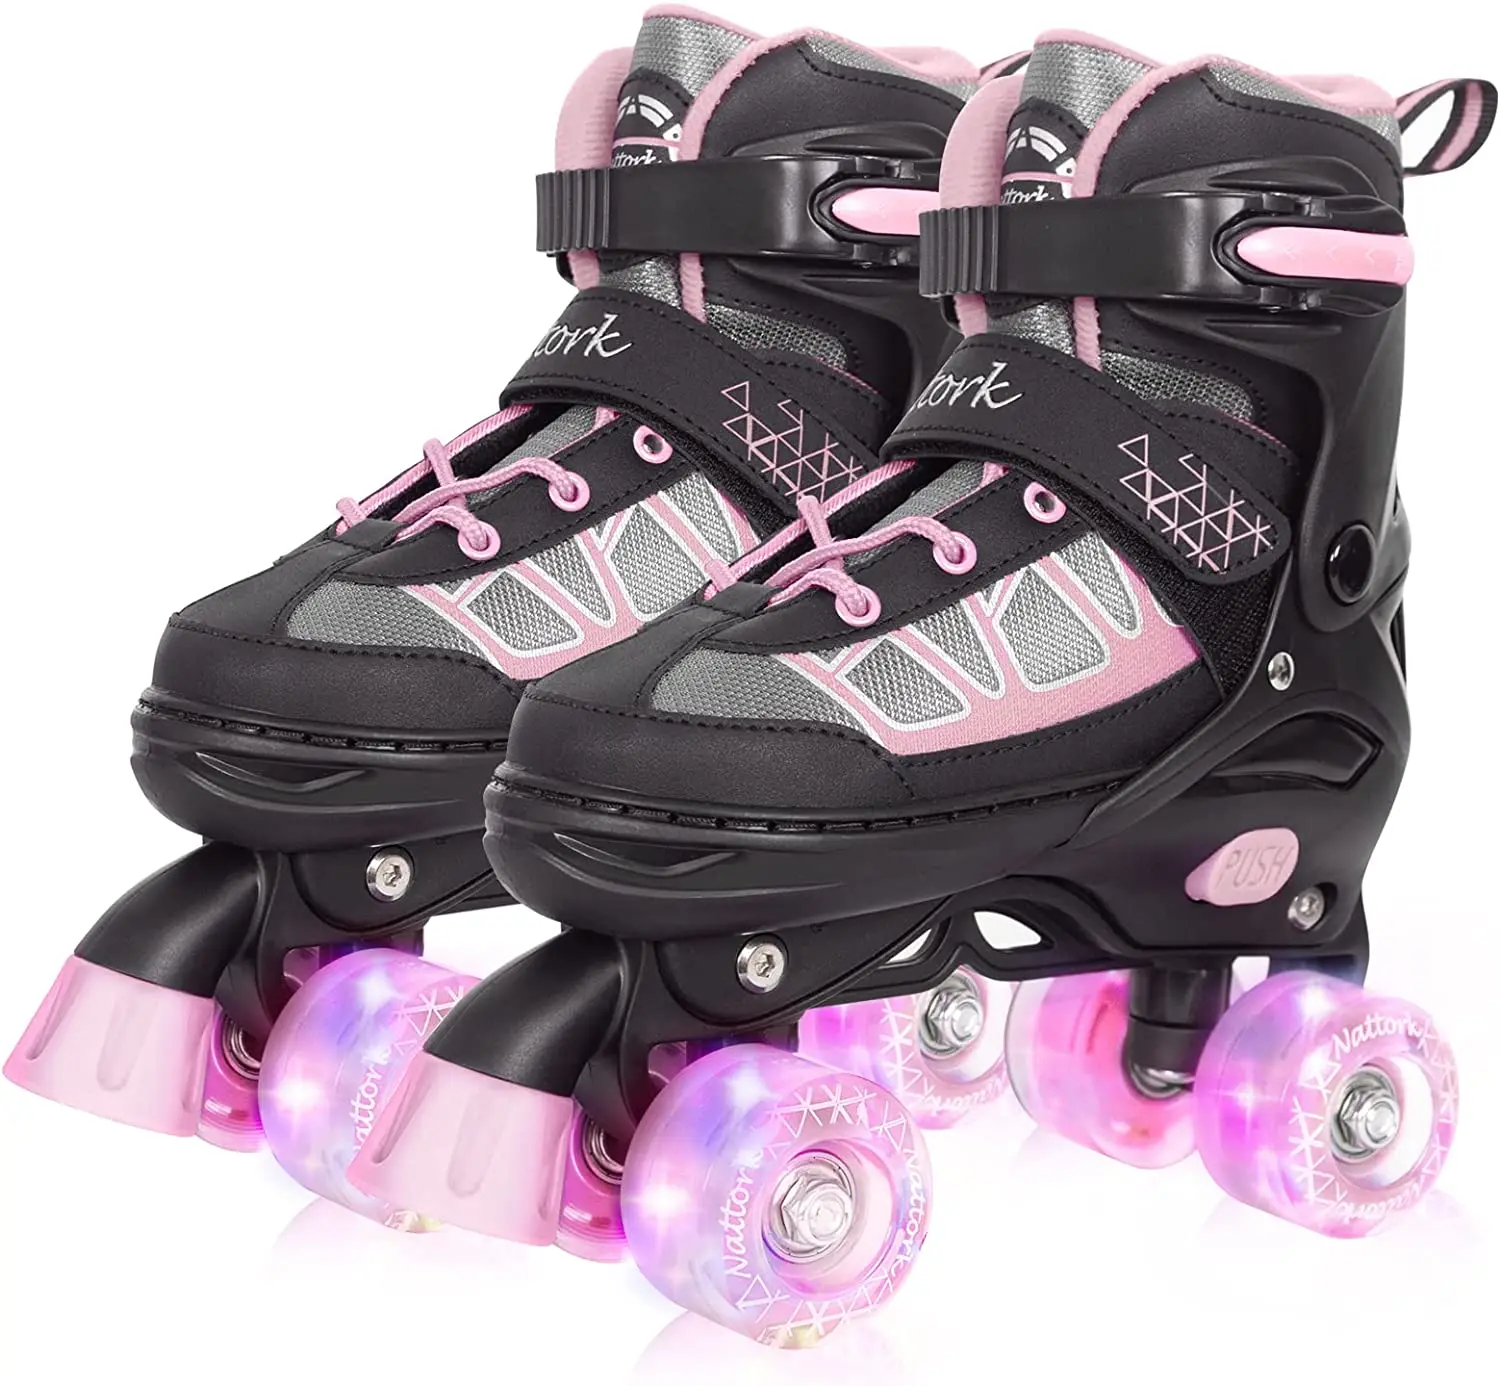 

Регулируемые роликовые коньки Nattork для детей светильник светящимся колесом, наружные и внутренние роликовые коньки с подсветкой для девоче...